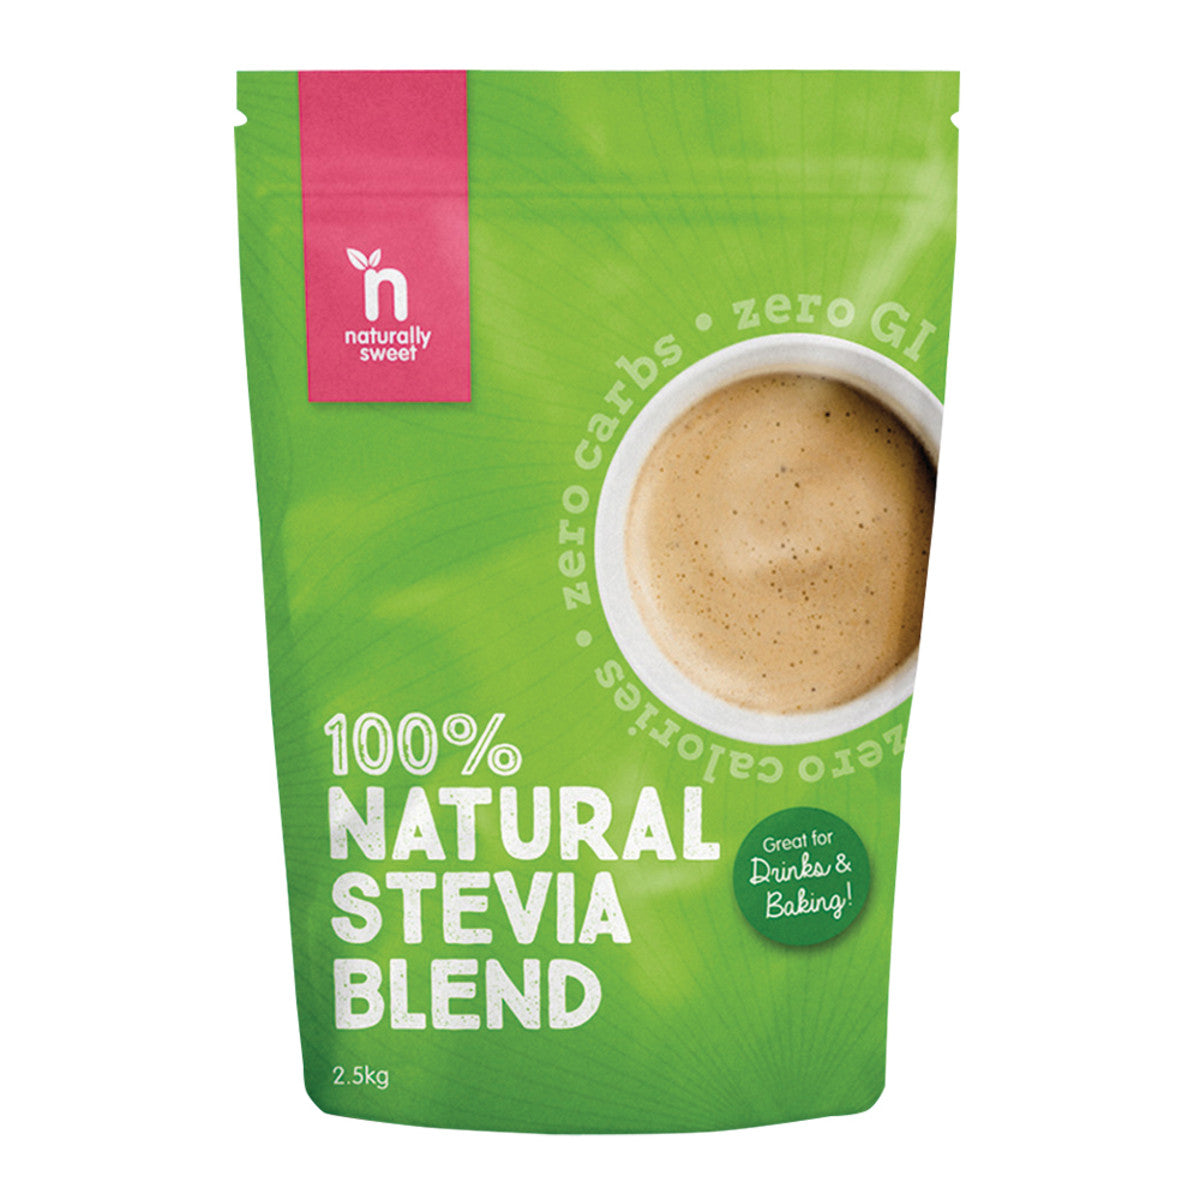 Naturally Sweet - 100% Natural Stevia Blend